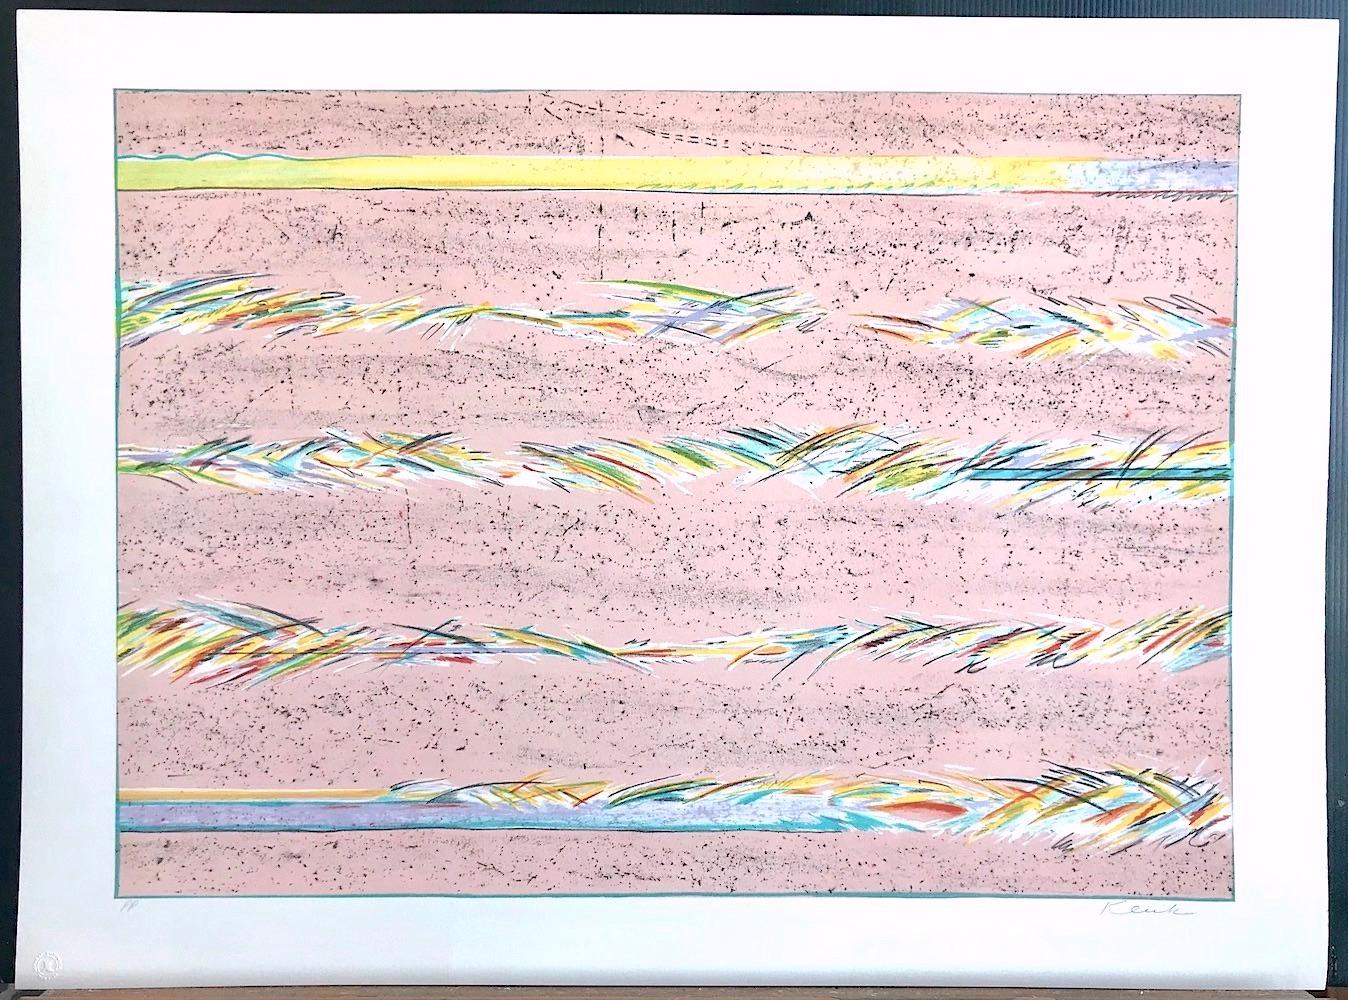 DREAMFIELDS I ist eine handgezeichnete Originallithografie der Künstlerin Sybil Kleinrock (Ehefrau des bekannten Schmuckdesigners David Yurman). Es wurde in sieben Farben unter Verwendung traditioneller Handlithografietechniken auf archivfähigem